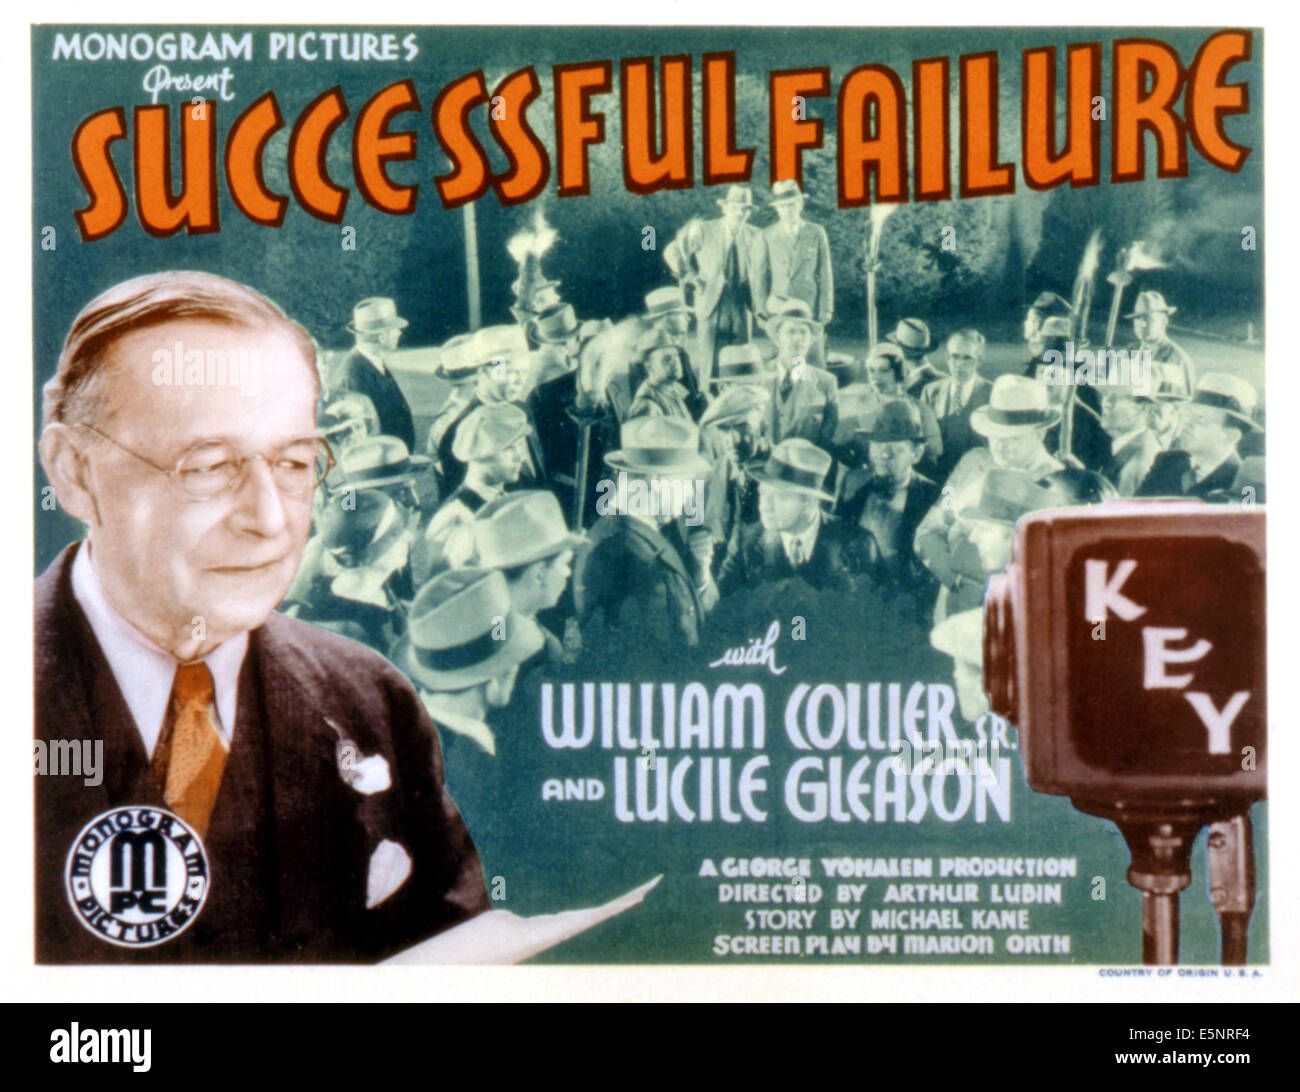 A SUCCESSFUL FAILURE, William Collier Sr, 1934 Stock Photo